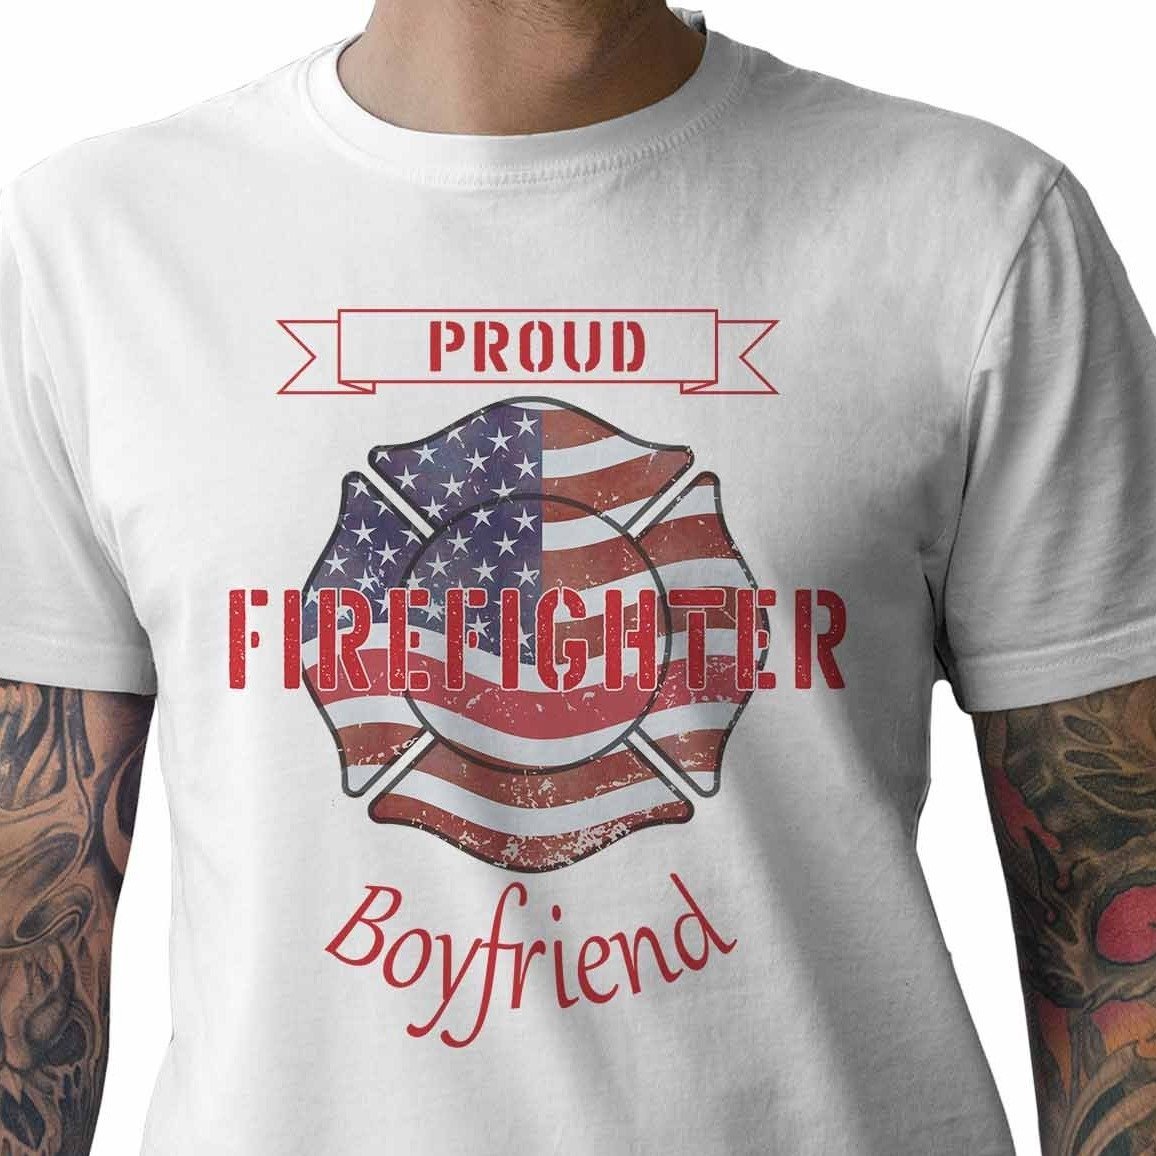 Proud Firefighter Boyfriend - My Custom Tee Party